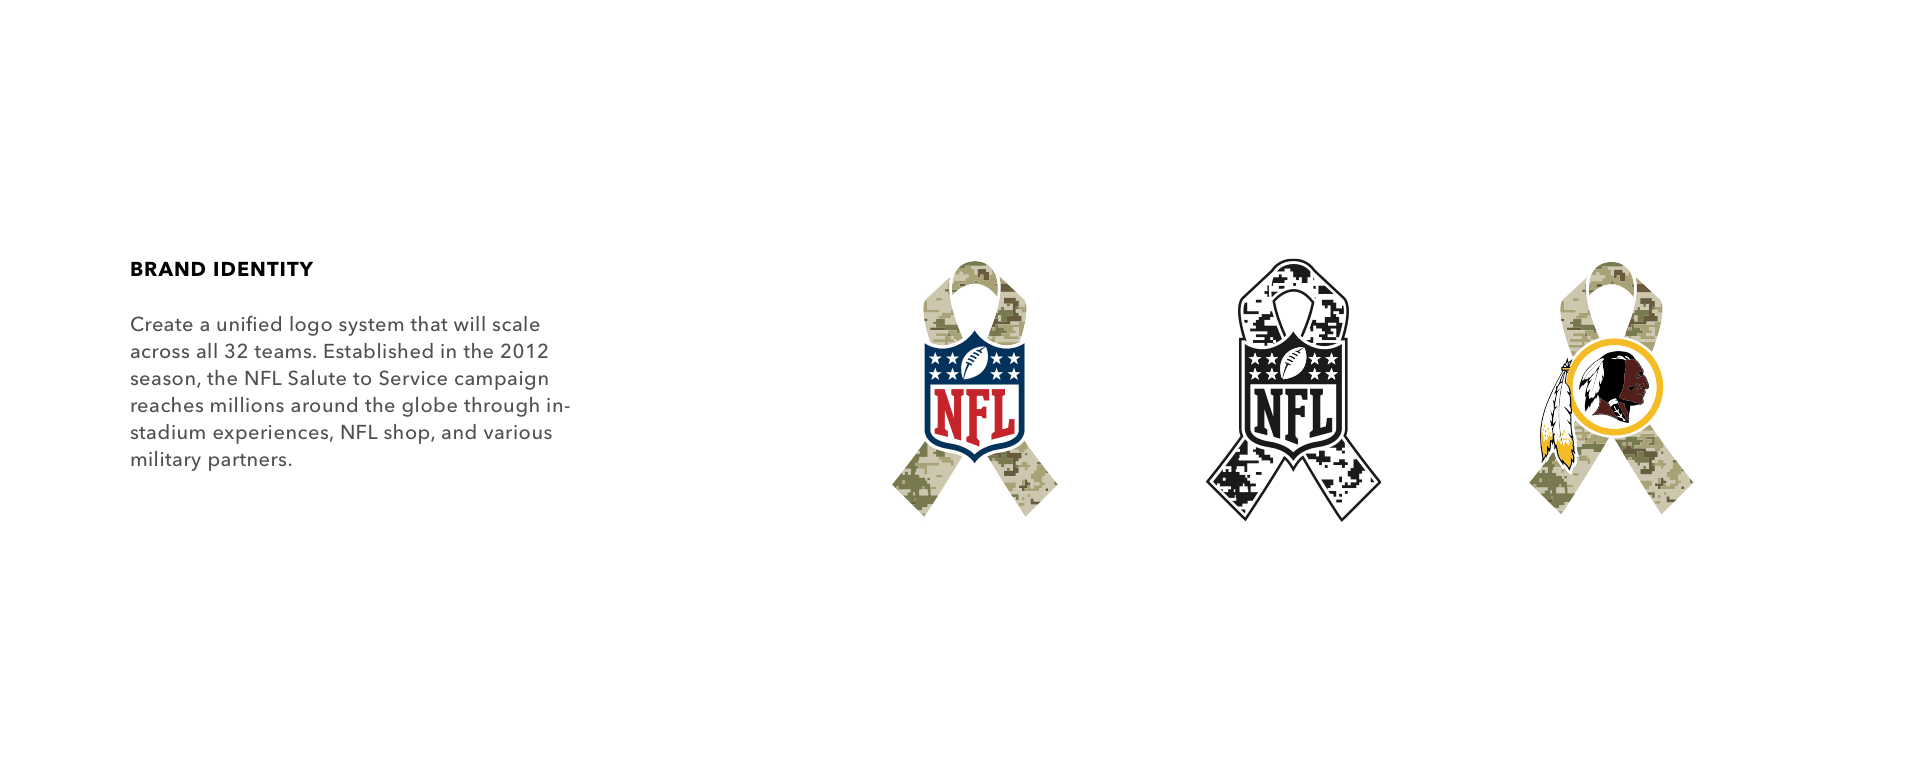 NFL Apparel, NFL Gear & Clothing, NFL Gifts, NFL Pro Shop